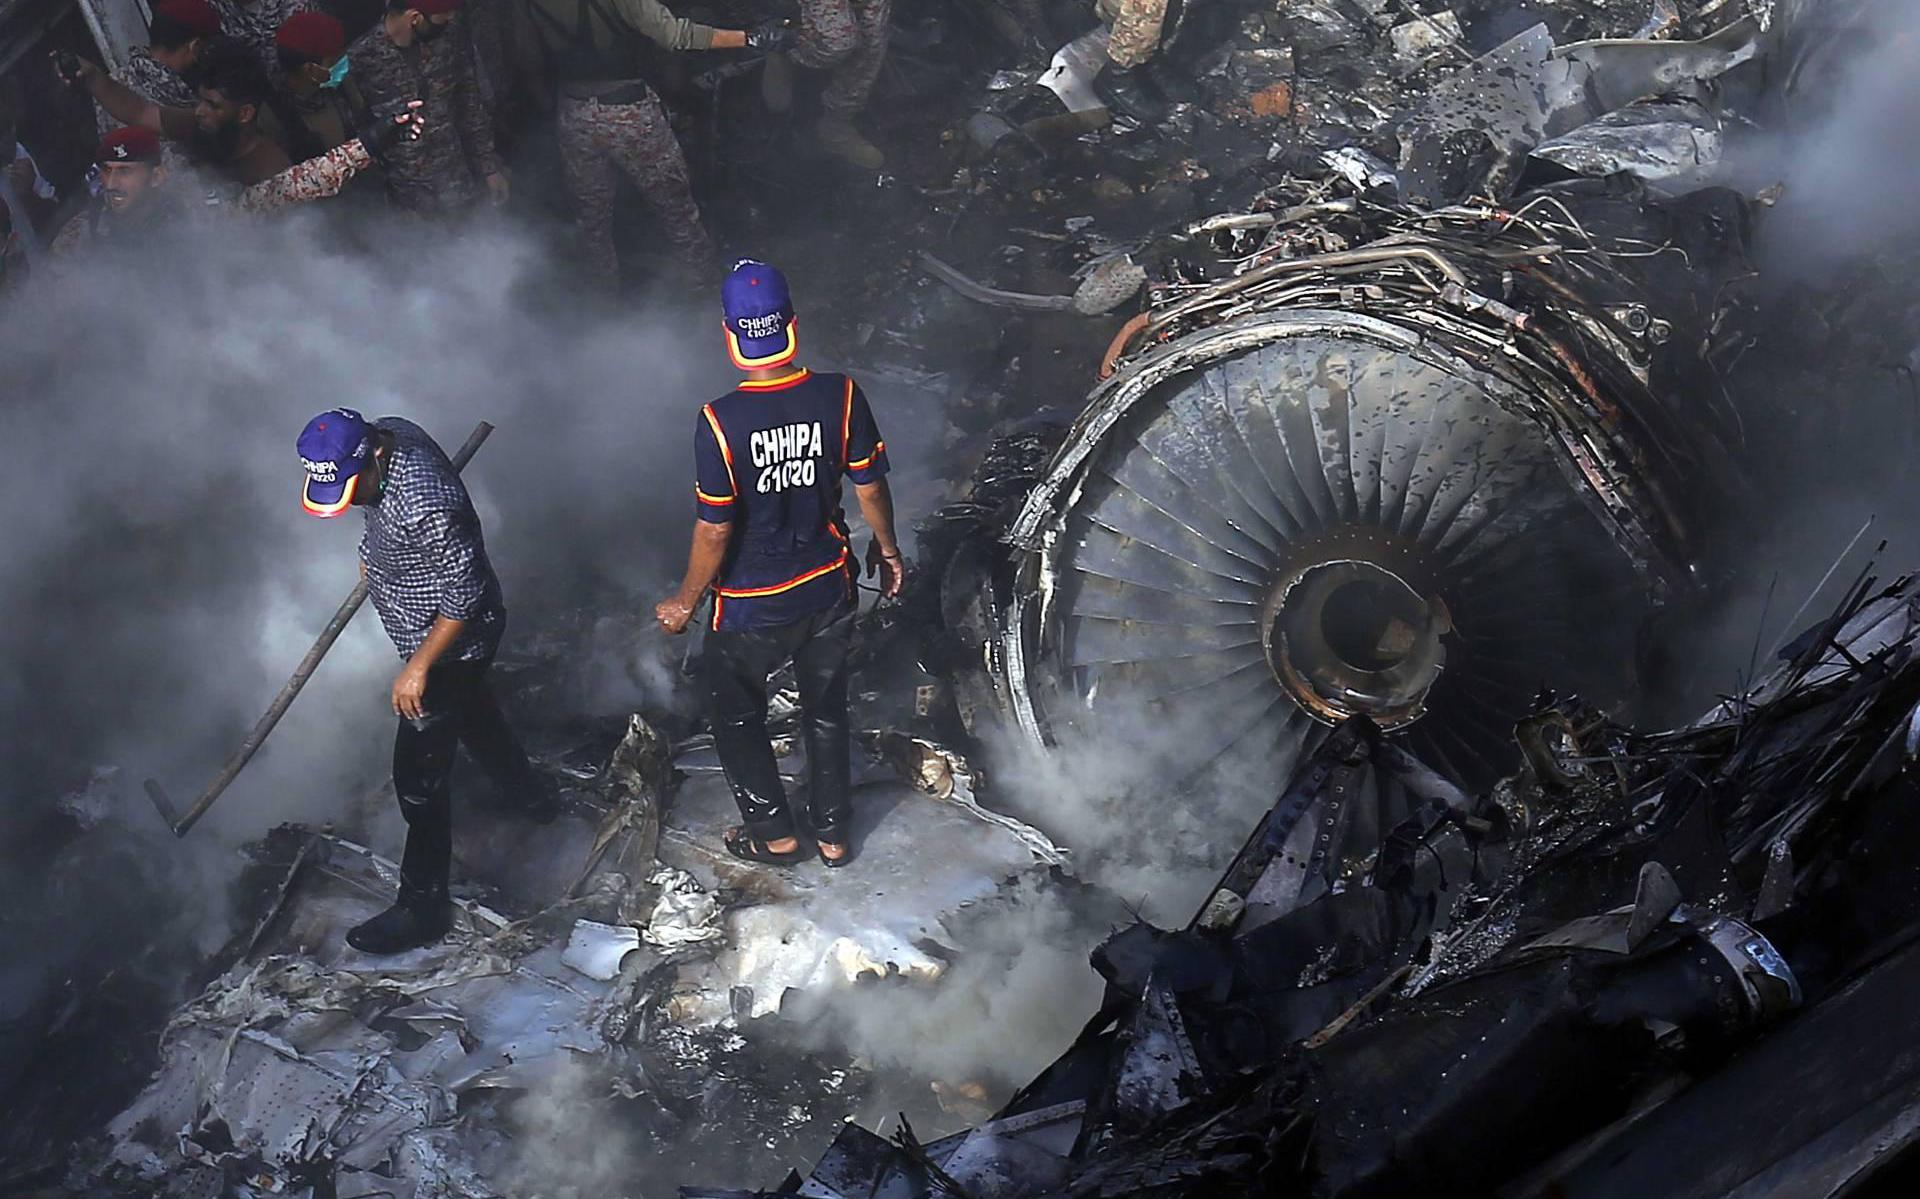 Tachtig doden gevonden na vliegtuigcrash Pakistan